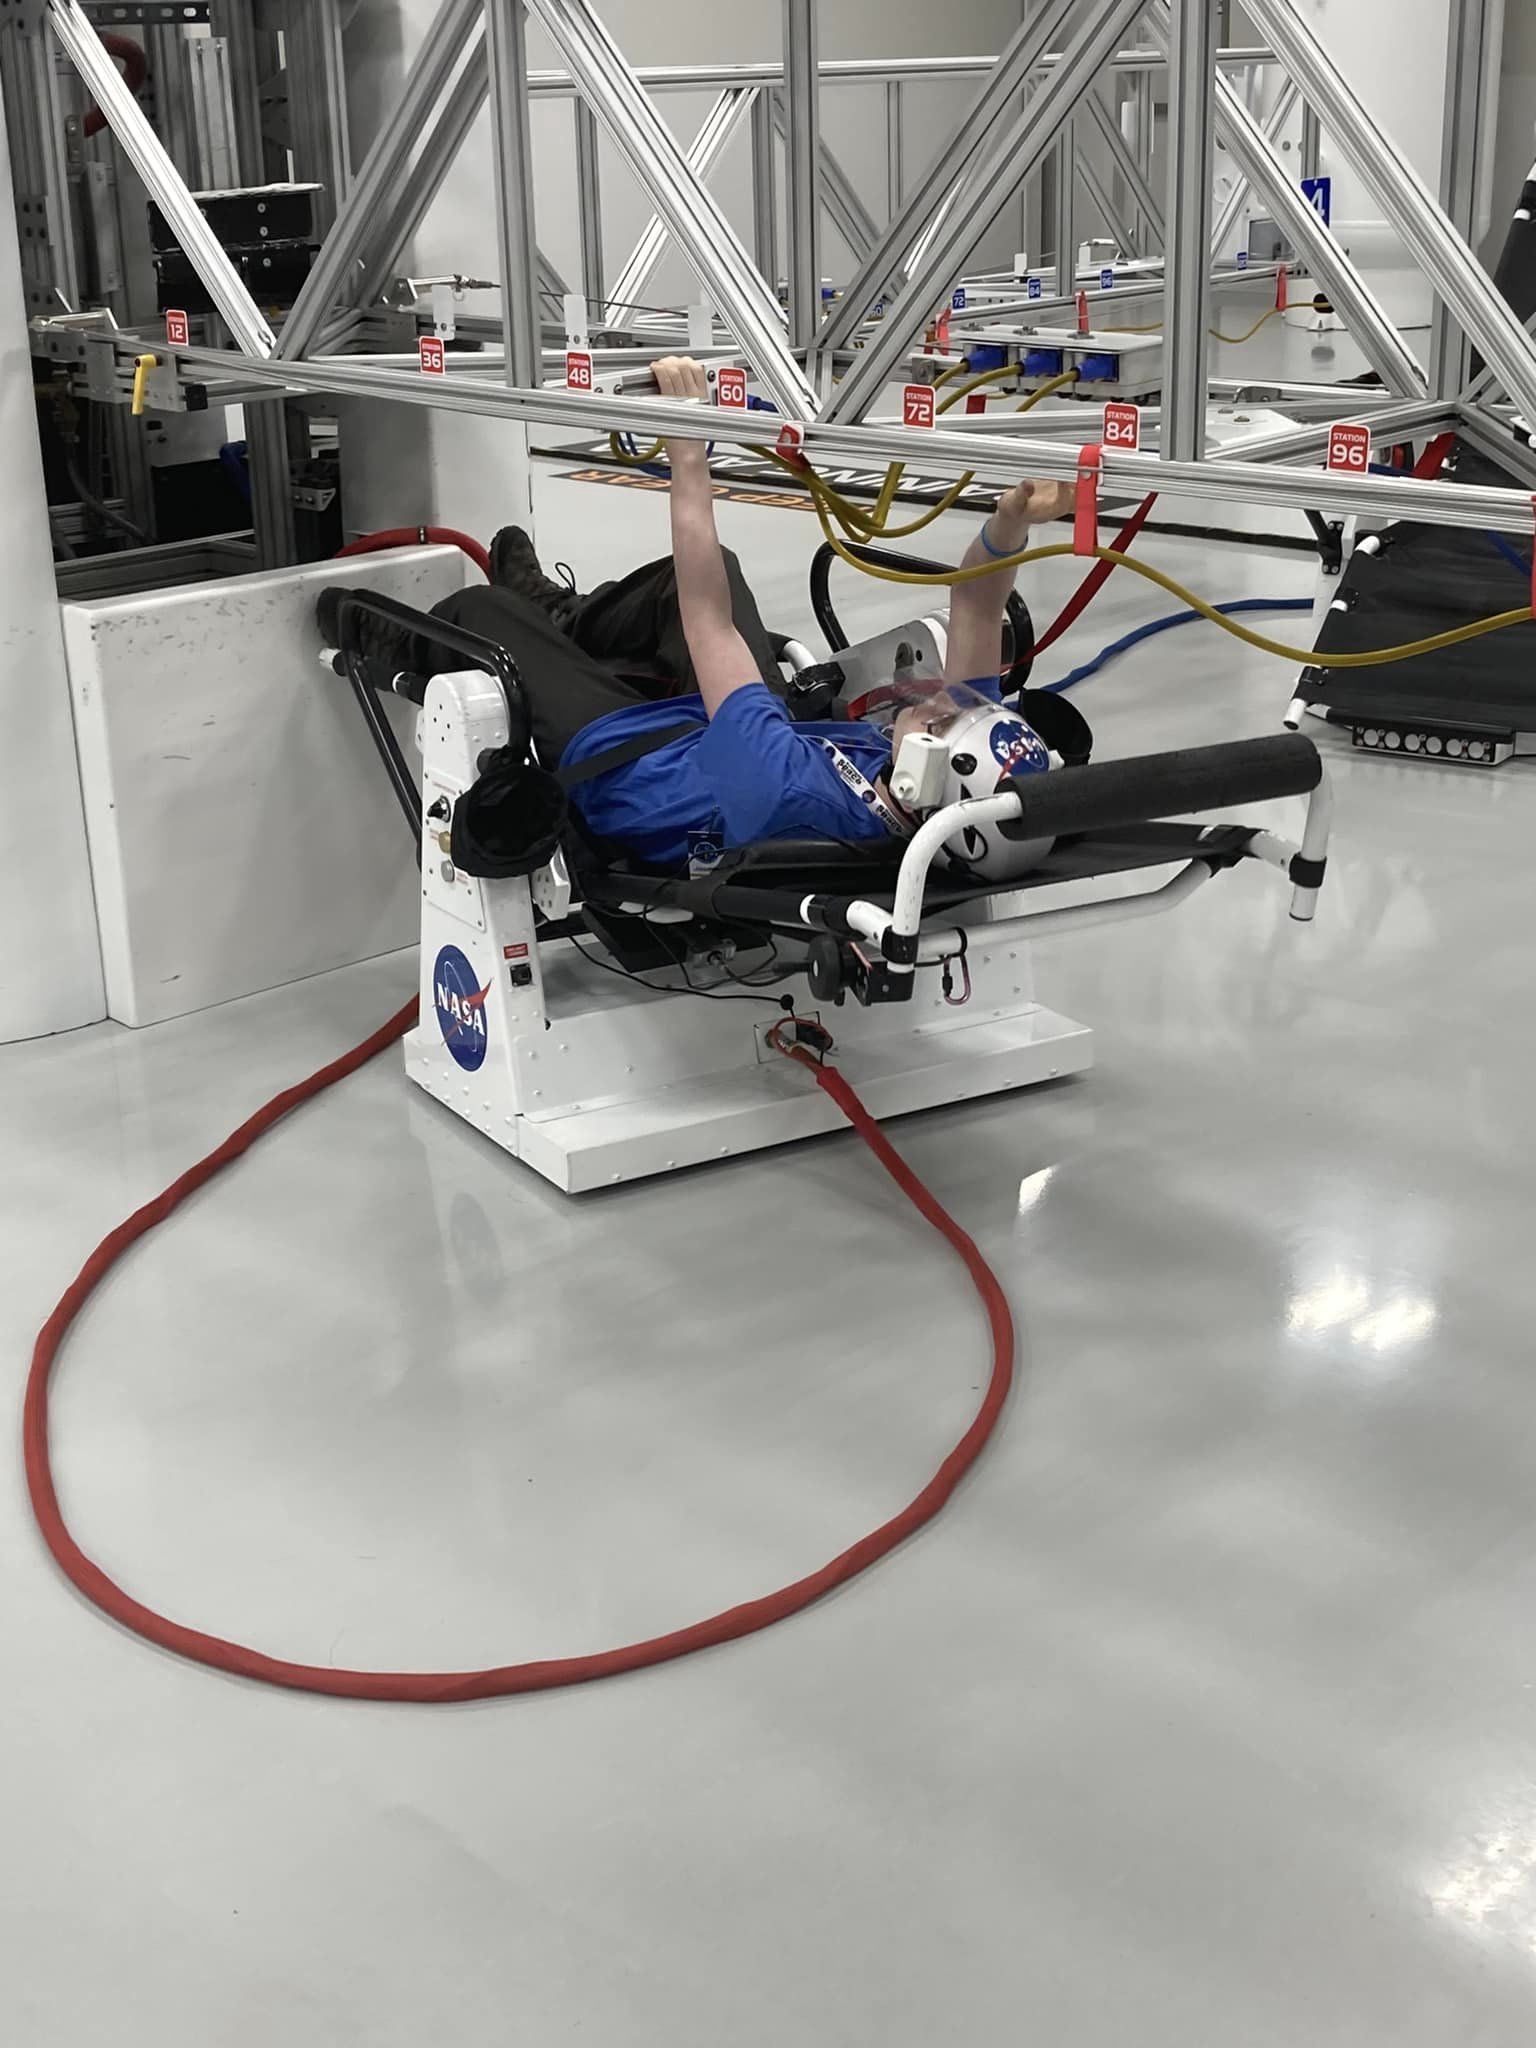 Astronaut training equipment